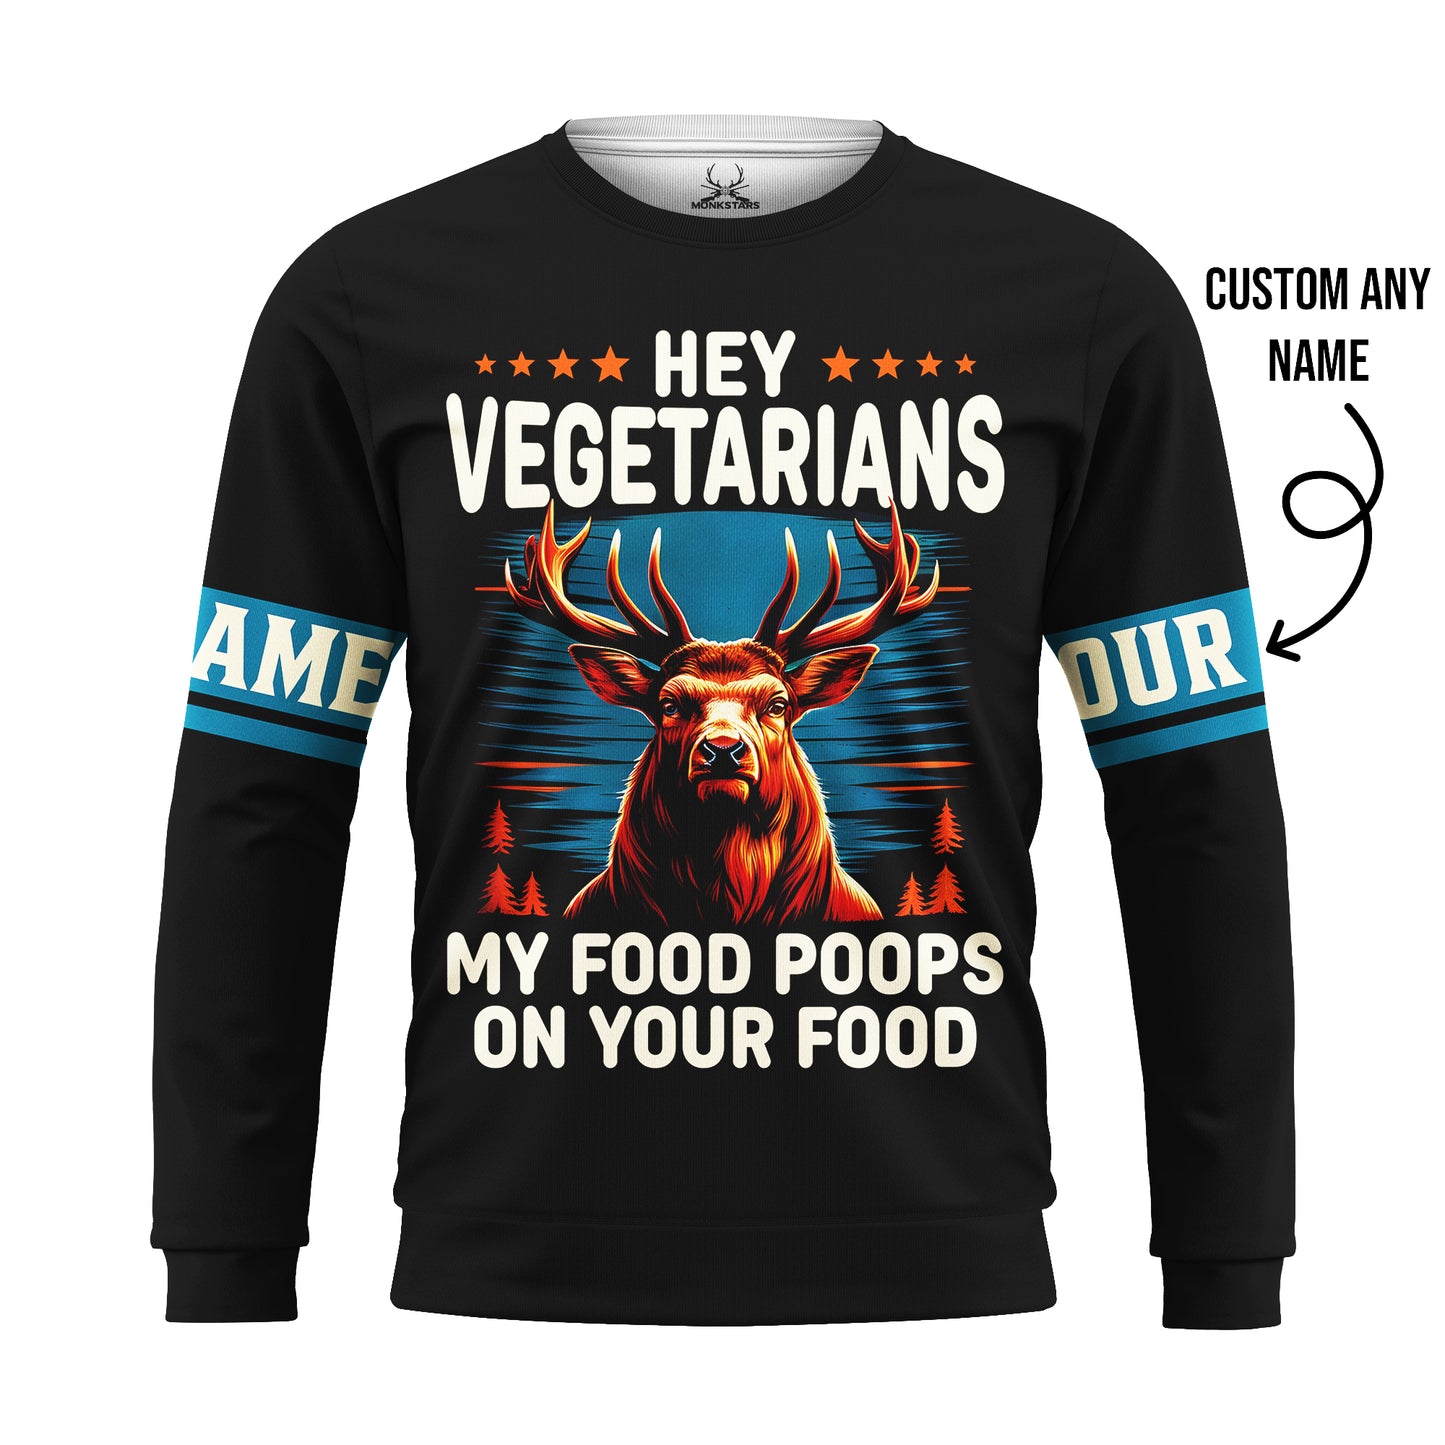 Deer Hunting Hoodie - Hey Vegetarians - My Food Poops on Your Food